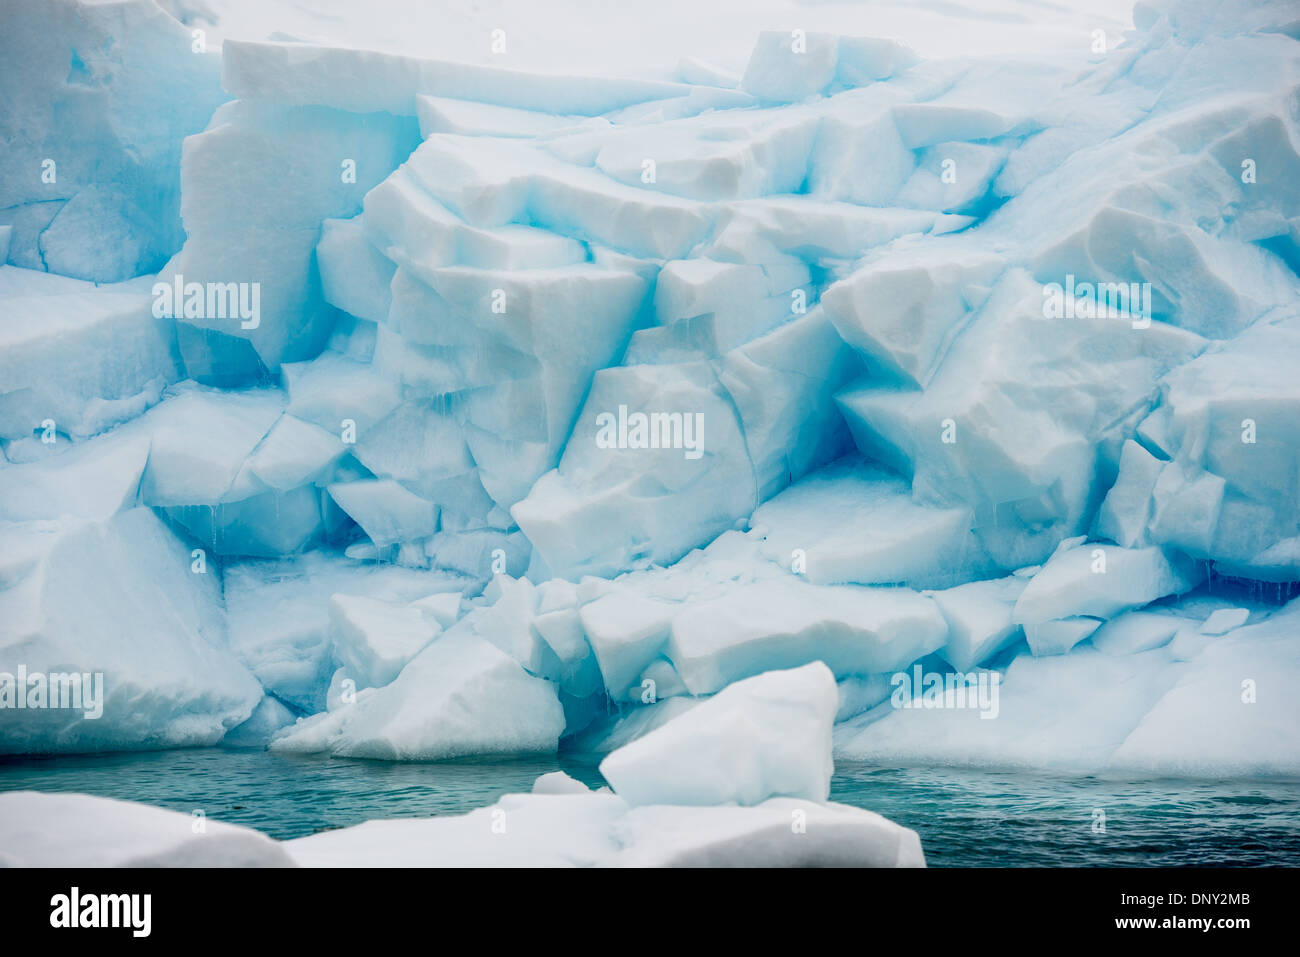 Antartide - grandi blocchi di ghiaccio del ghiacciaio raggiunge giù per l'acqua a Paradise Harbour uno lato occidentale della penisola antartica. Foto Stock